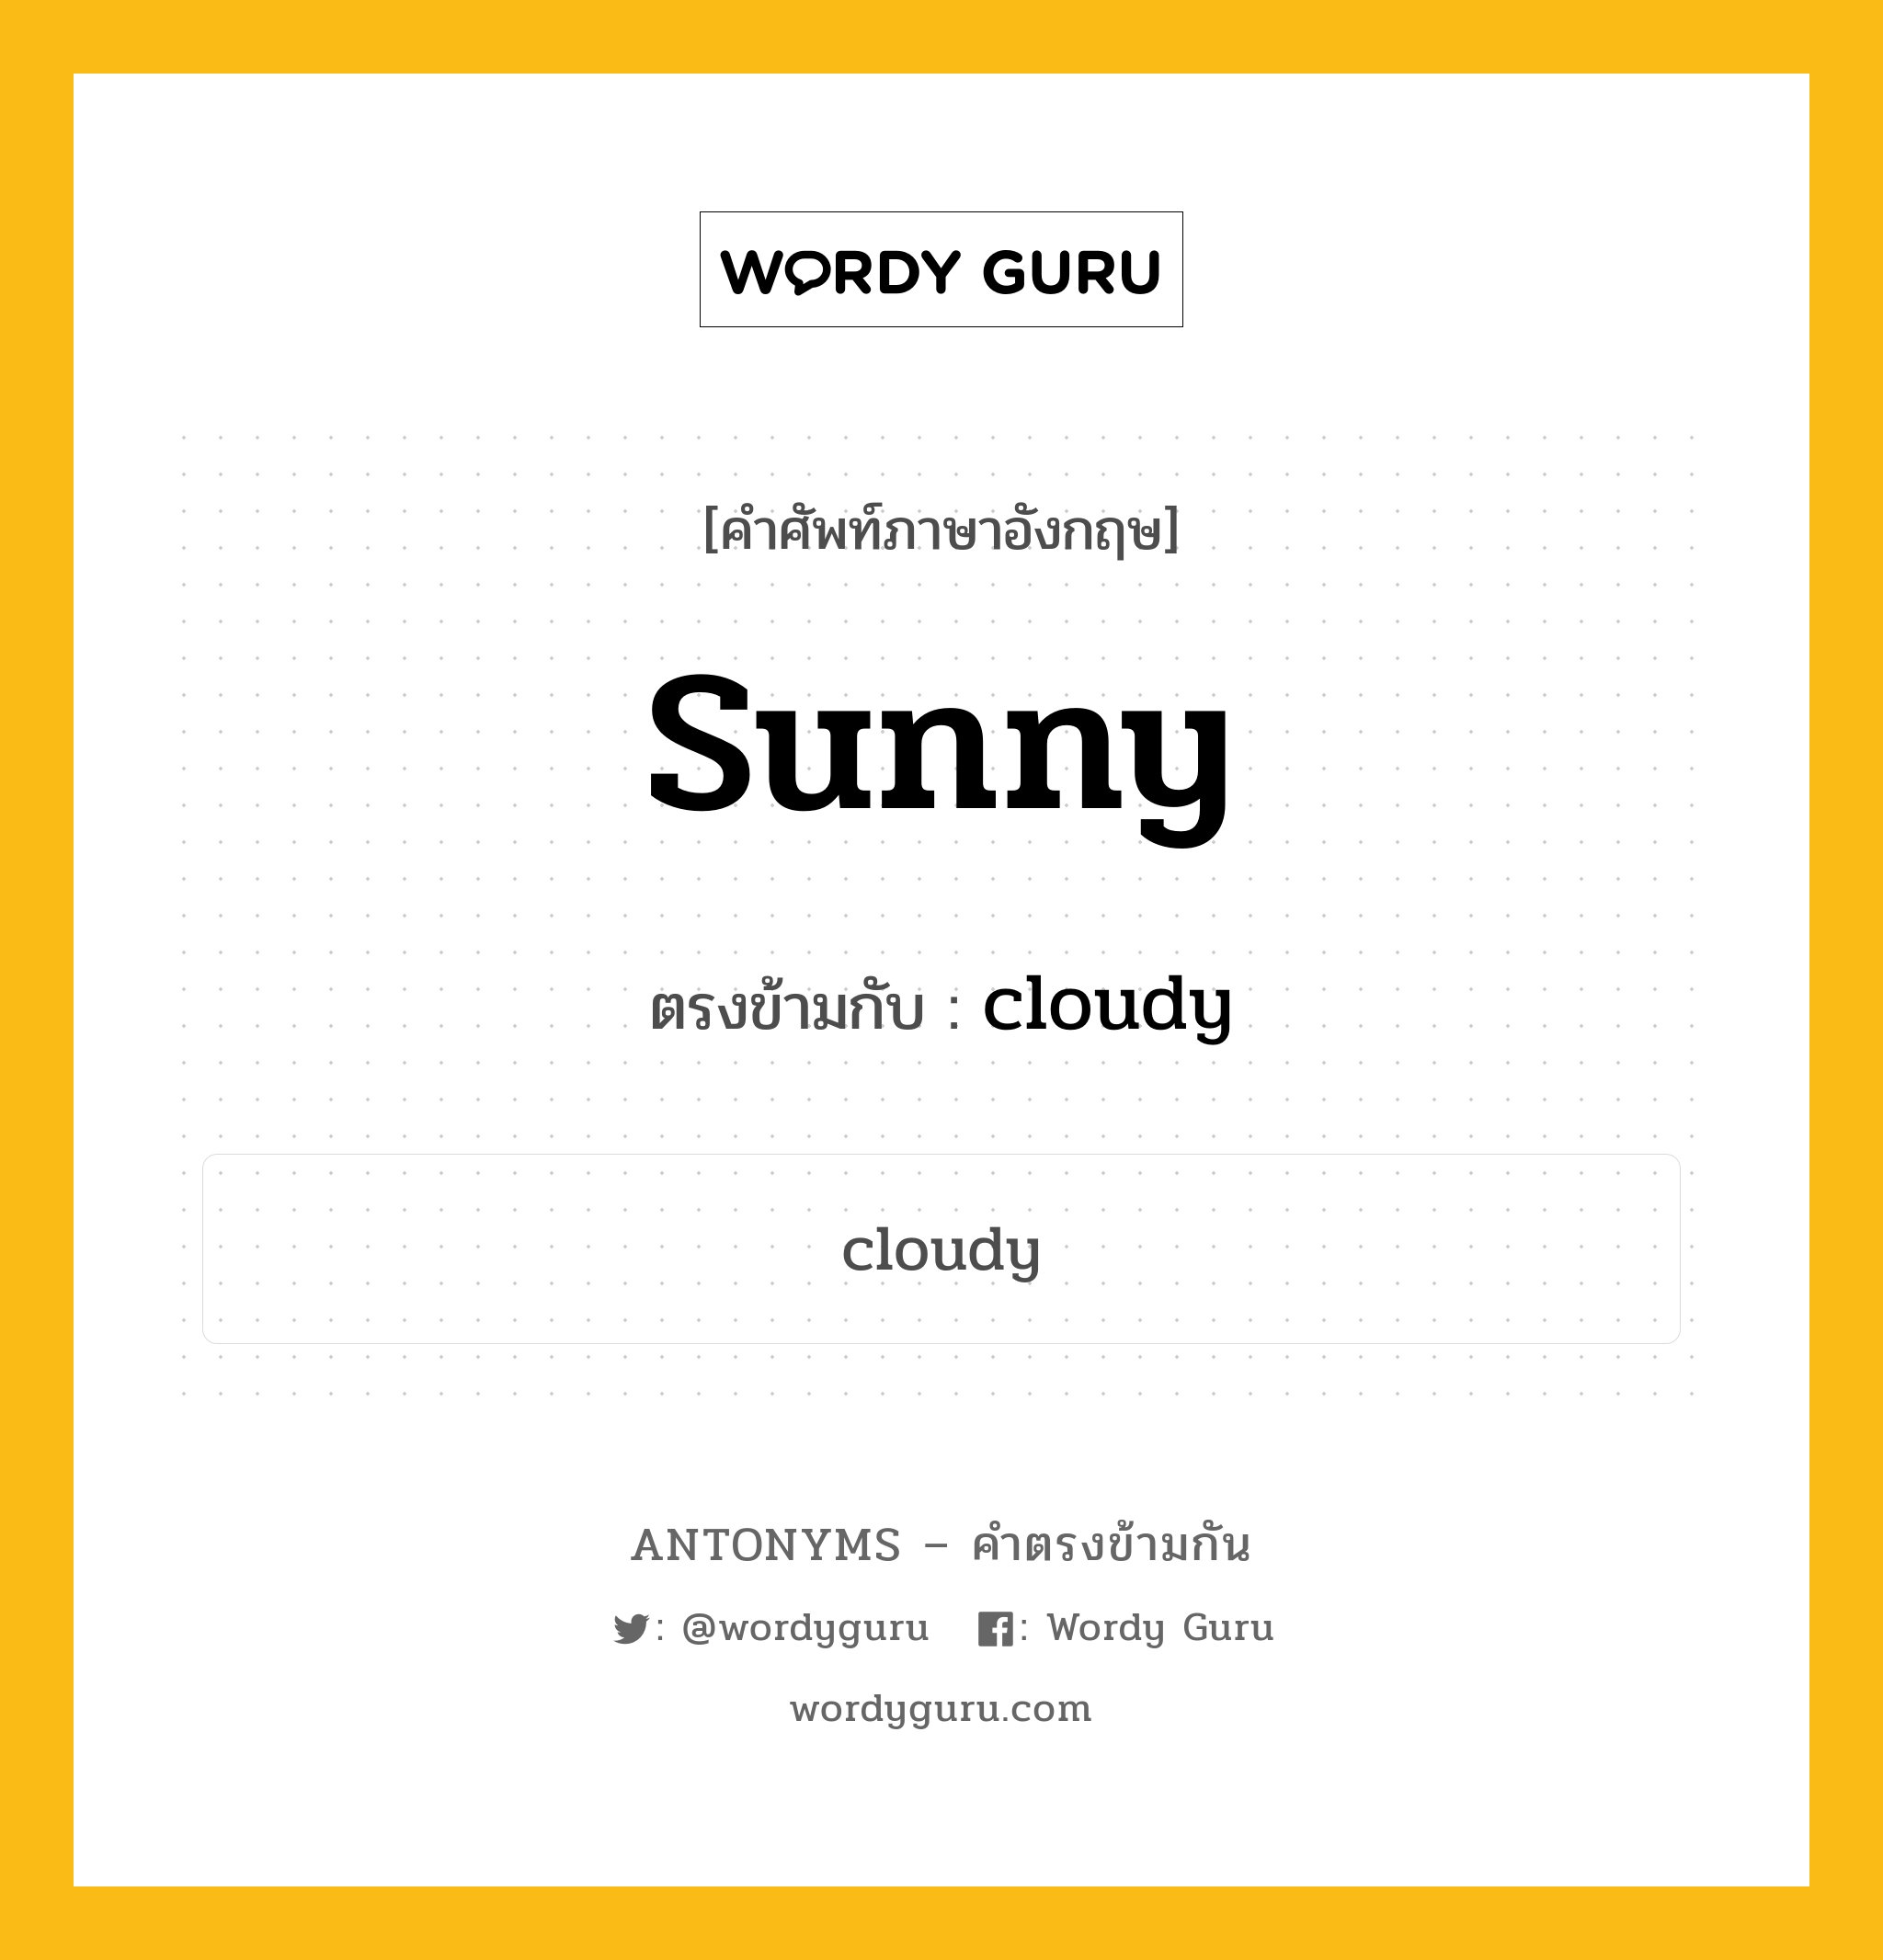 sunny เป็นคำตรงข้ามกับคำไหนบ้าง?, คำศัพท์ภาษาอังกฤษ sunny ตรงข้ามกับ cloudy หมวด cloudy